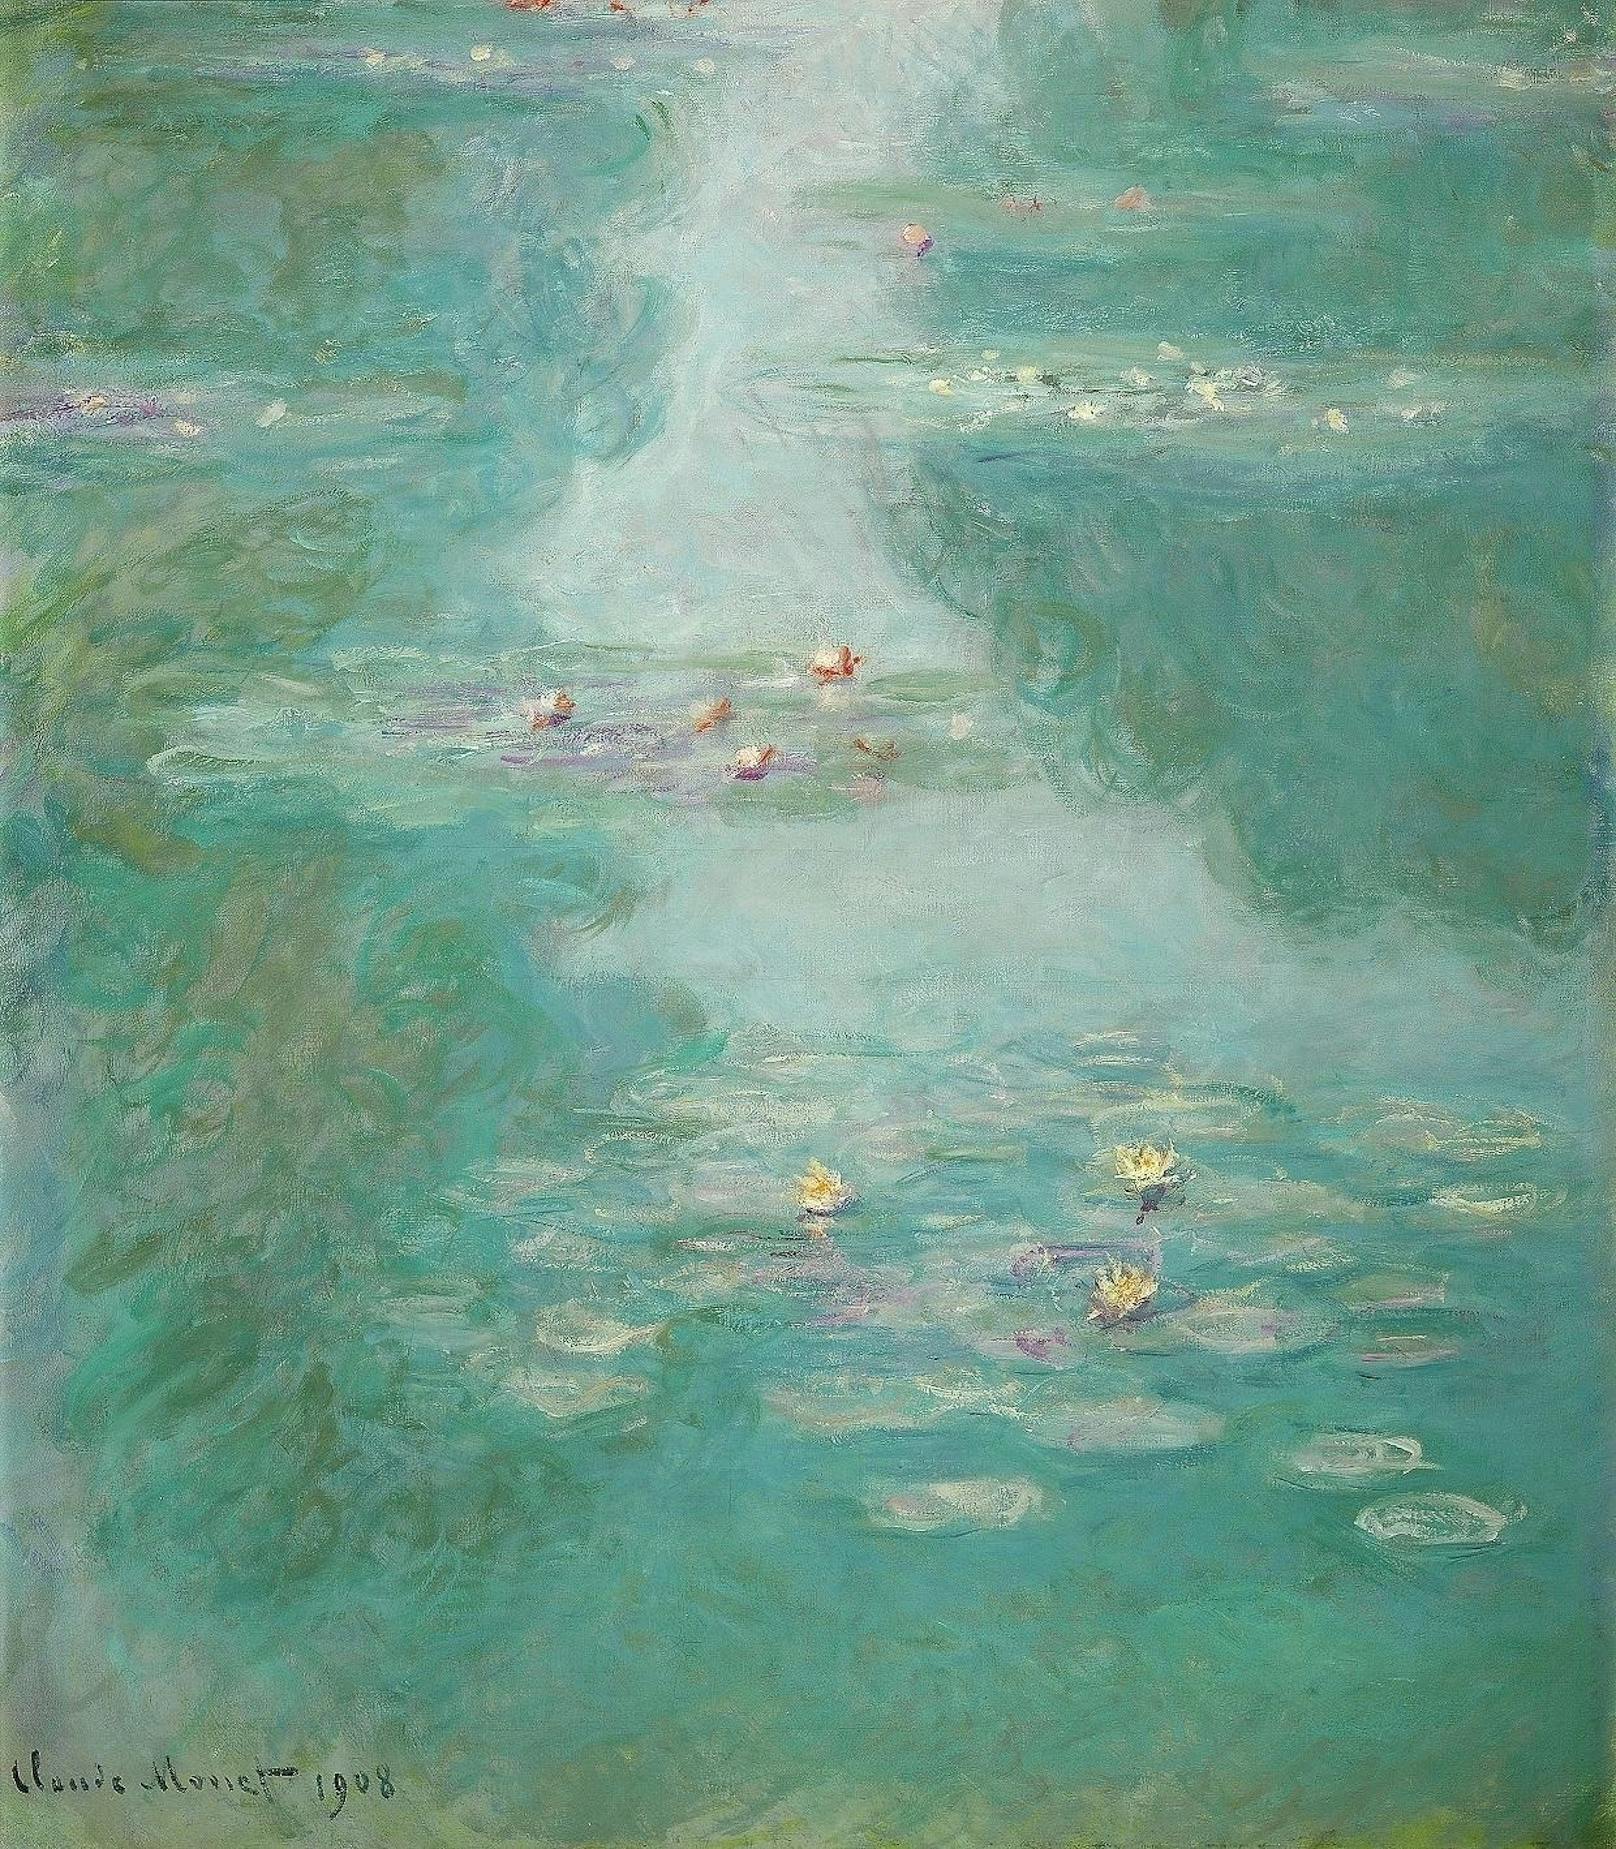 "Seerosen", 1908